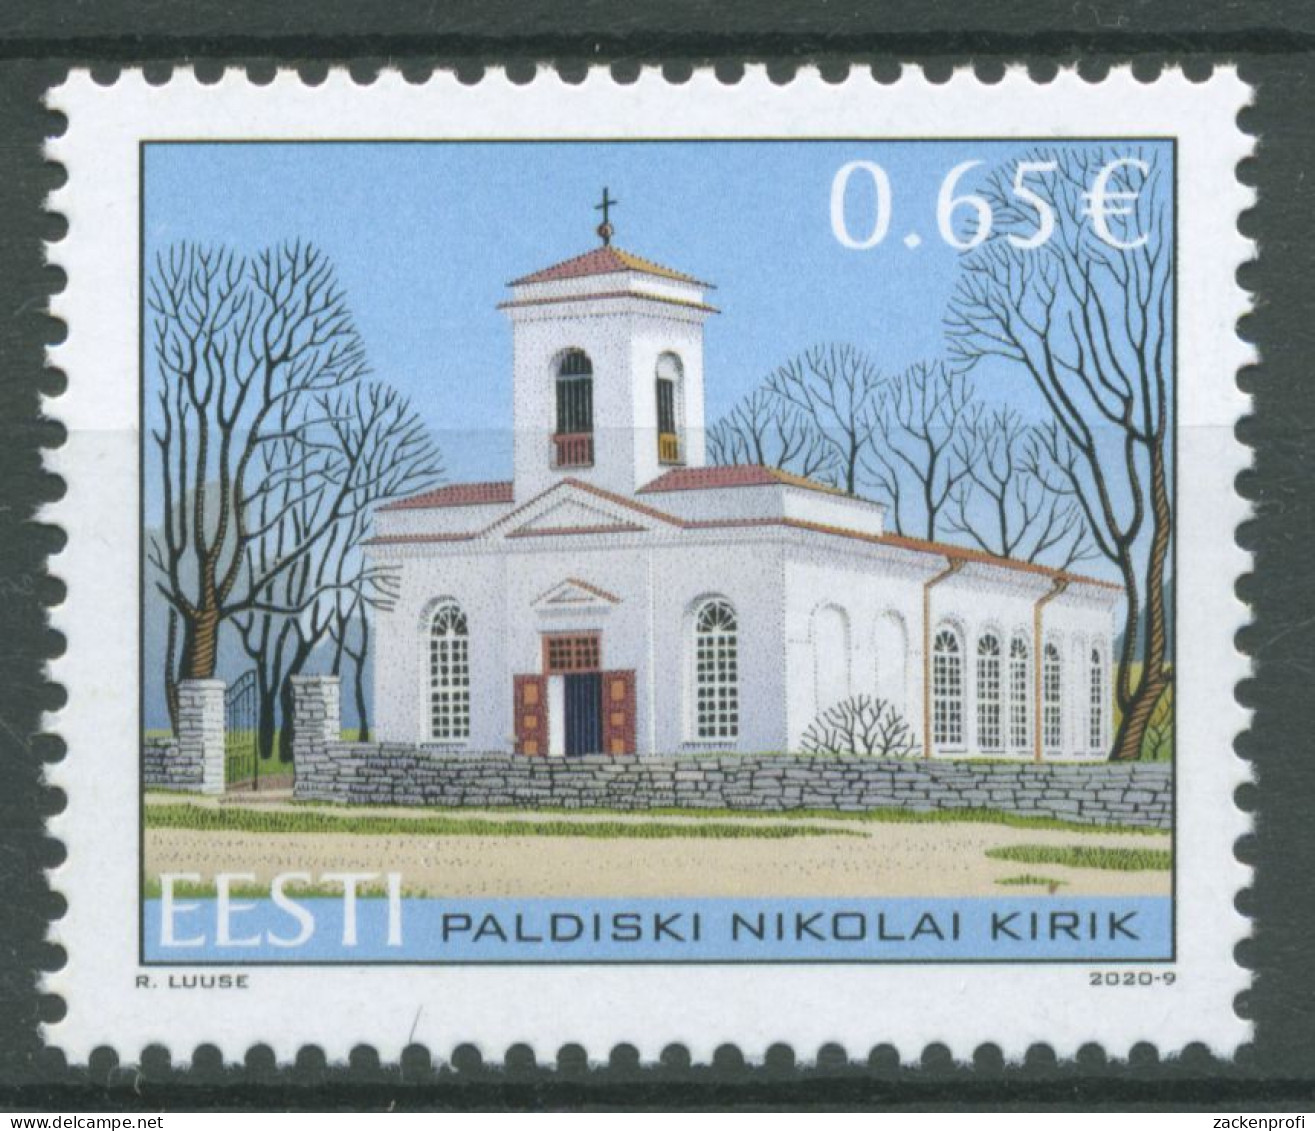 Estland 2020 Bauwerke Nikolaikirche Paldiski 979 Postfrisch - Estonia